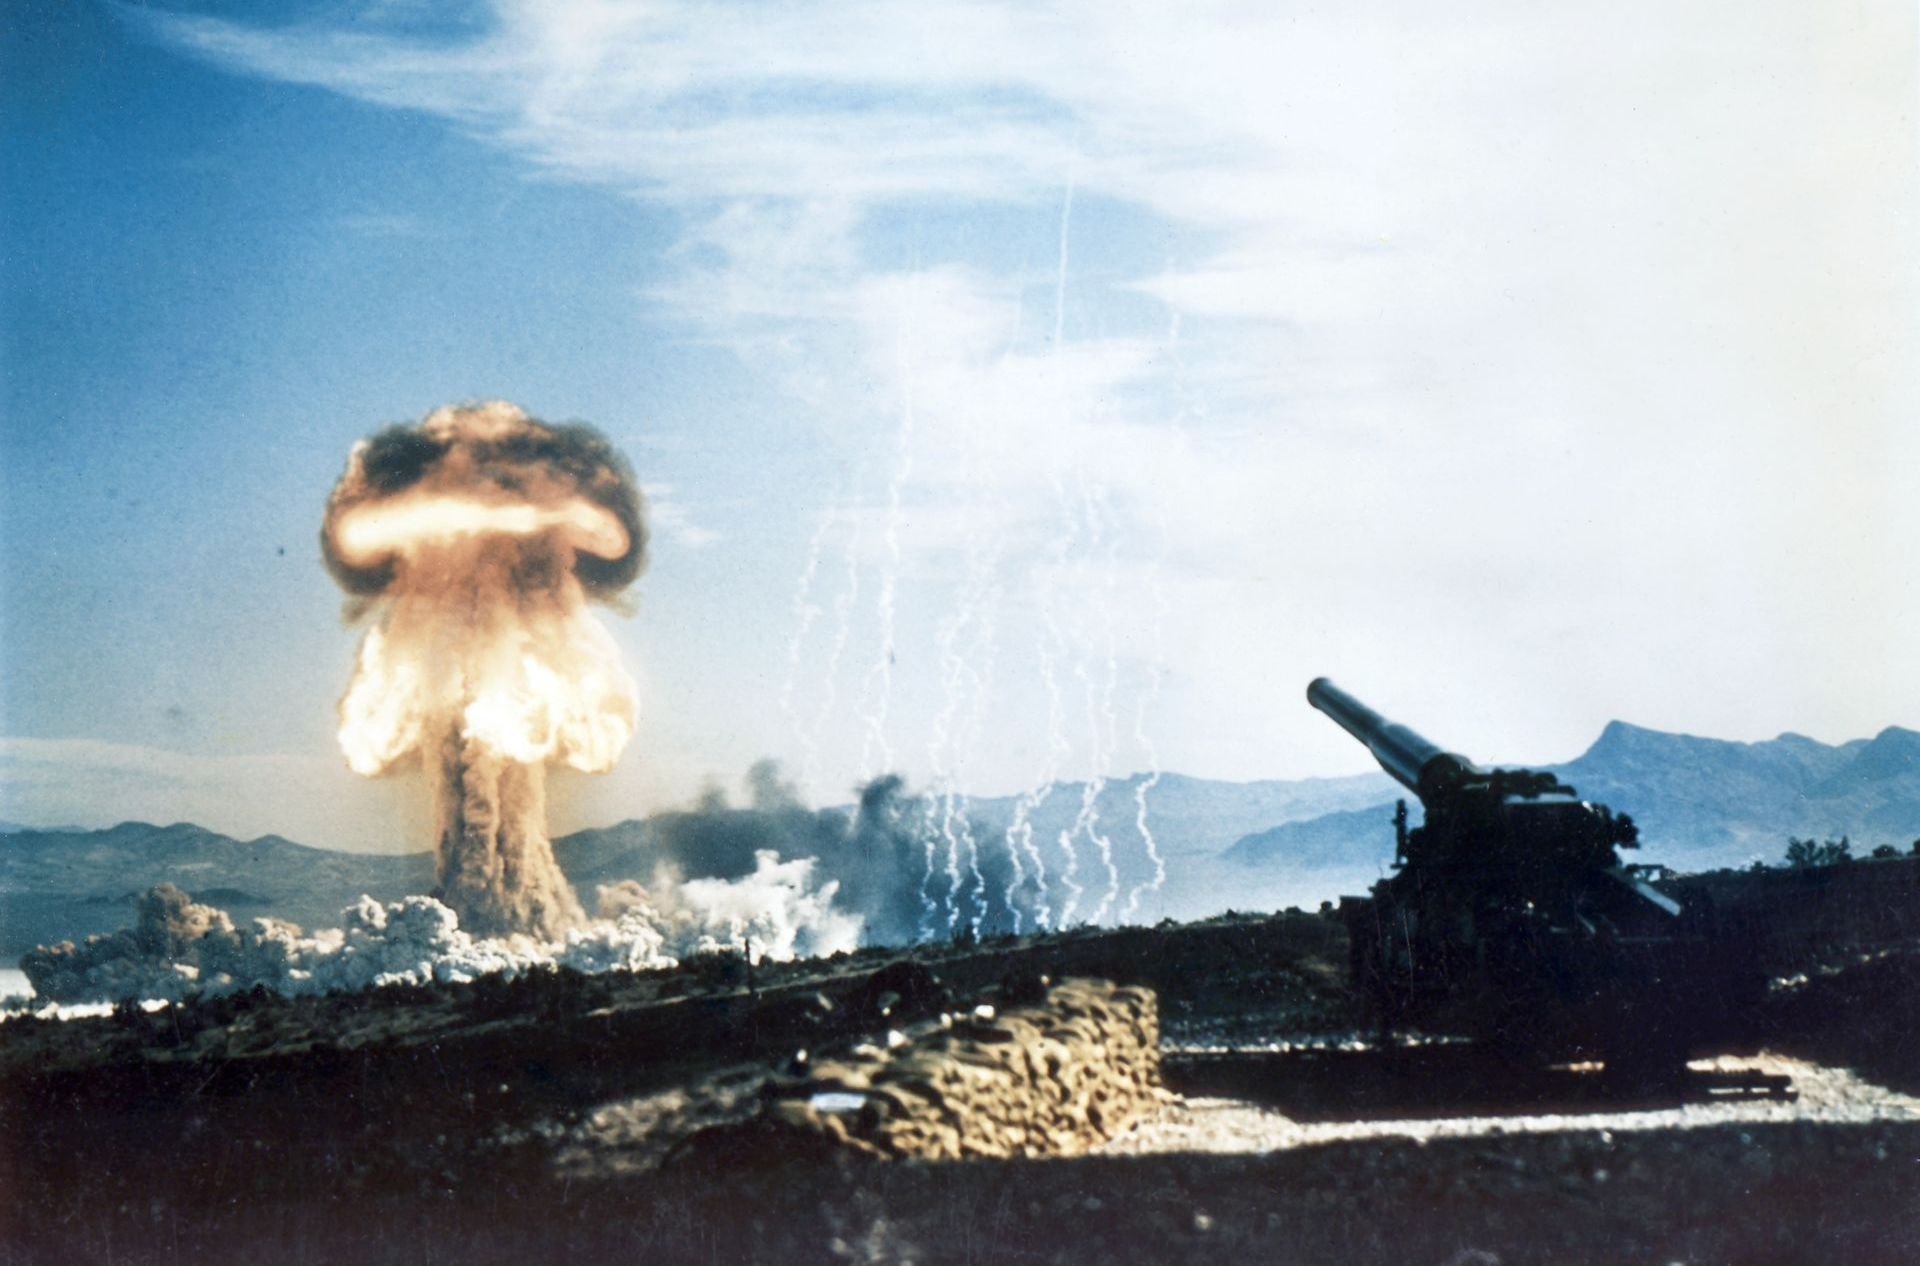 World's First Nuclear Gun: world record set in Nevada